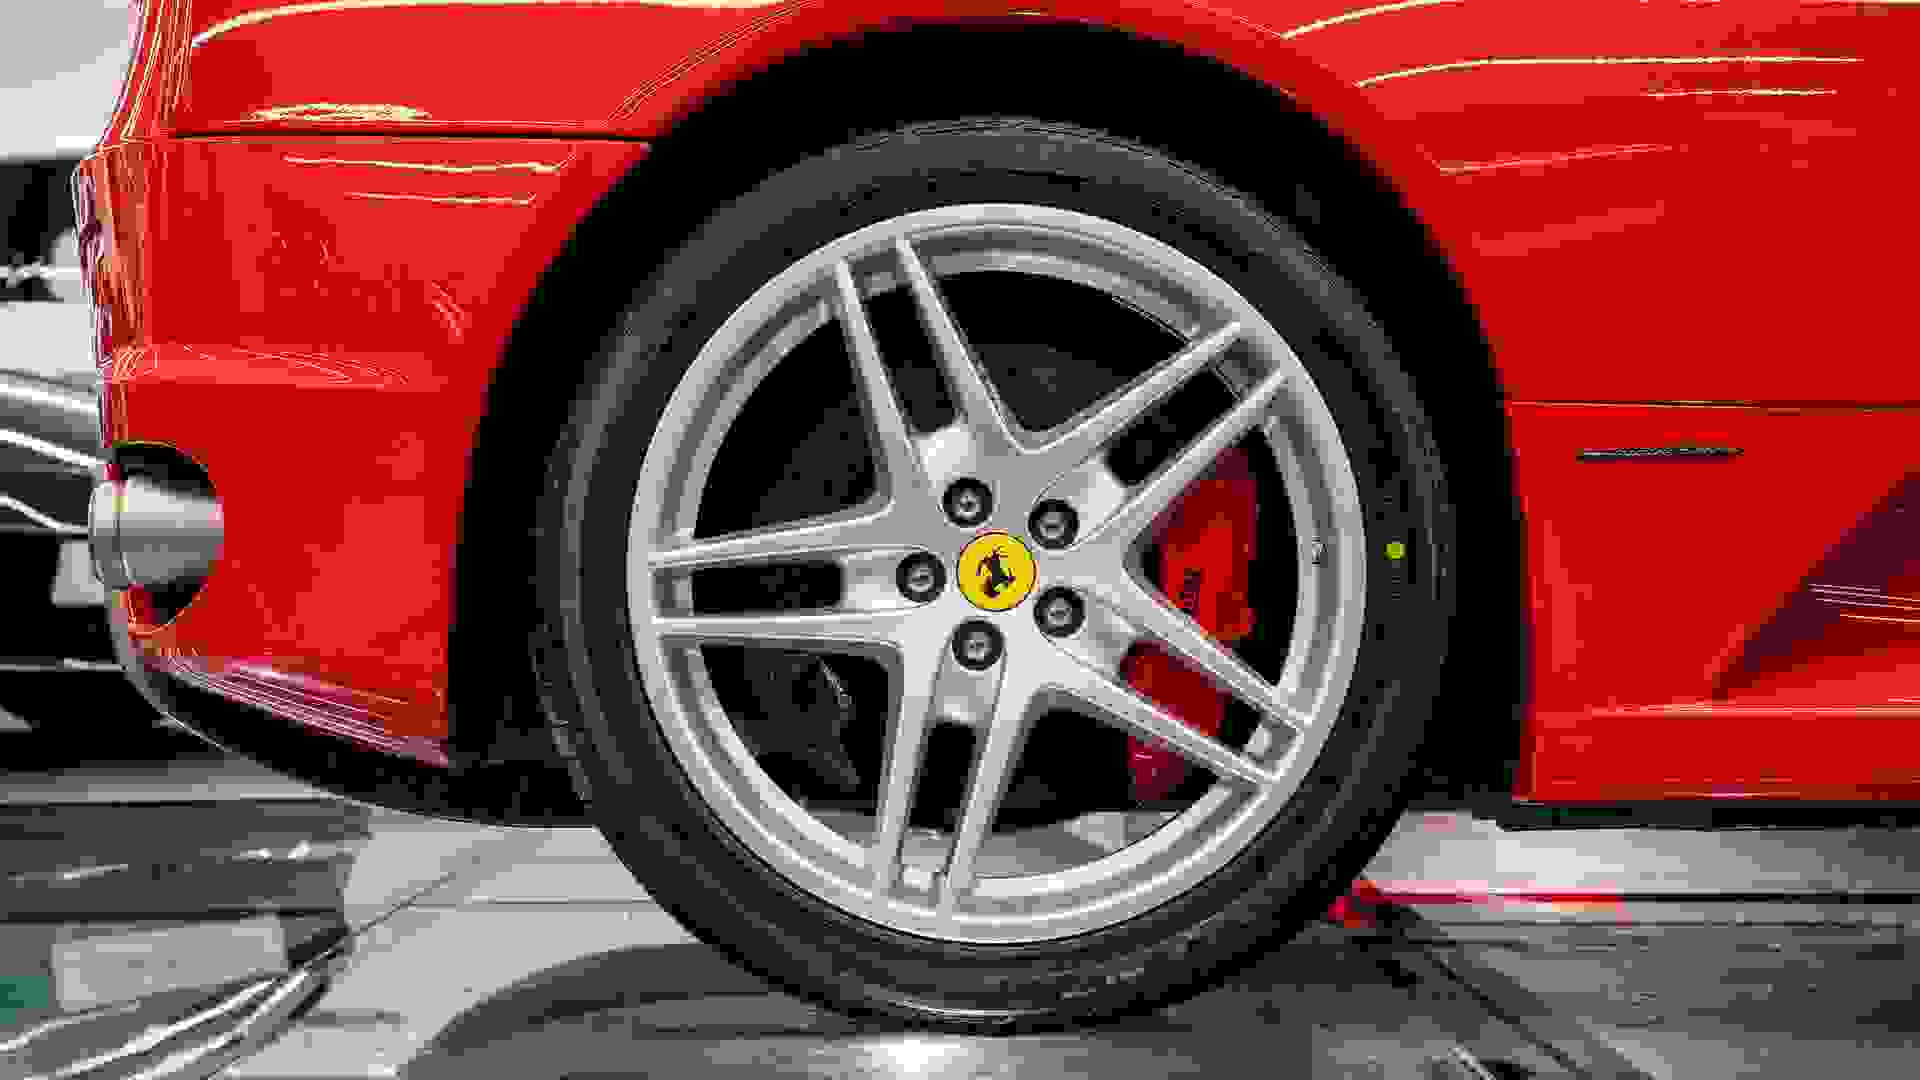 Ferrari F430 Photo f3c7358b-386b-4a0a-8ca0-802cd999742f.jpg